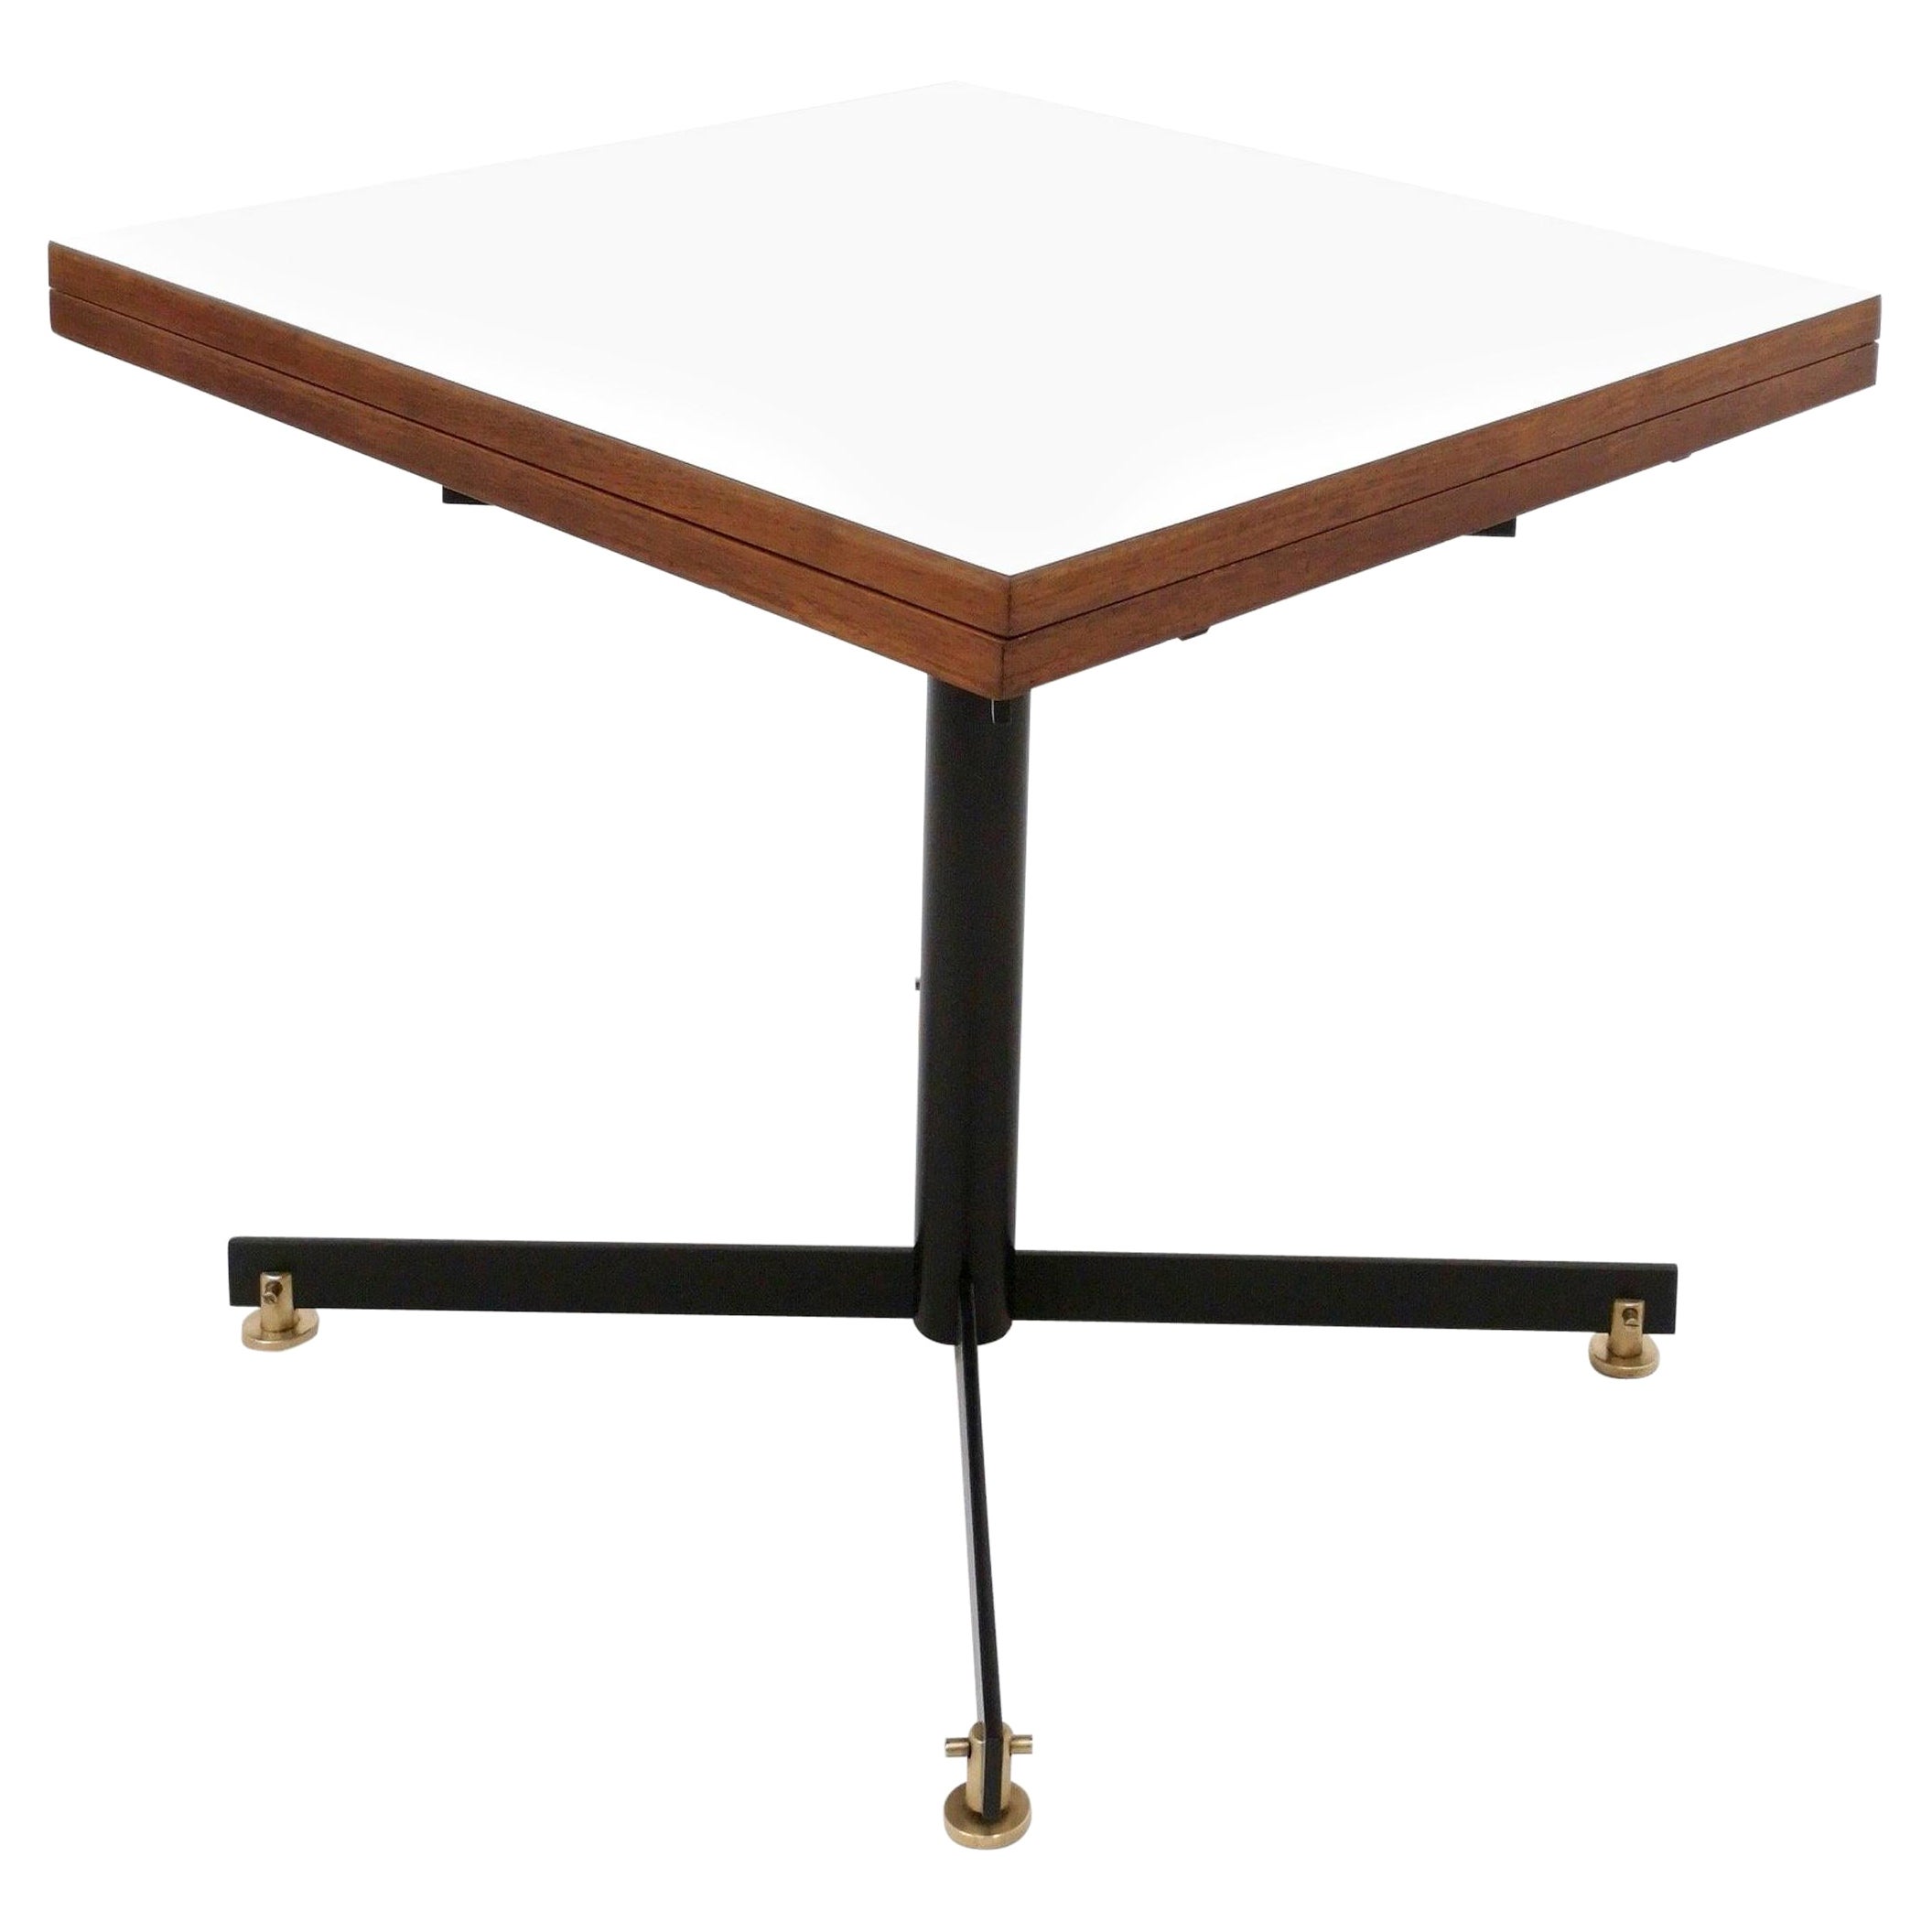 Fabriqué en Italie, années 1950.
Cette table est fabriquée en teck, en métal verni noir et en laiton et son plateau est recouvert de formica blanc.
Le mécanisme d'ouverture fonctionne parfaitement. 
Il peut présenter de légères traces d'utilisation